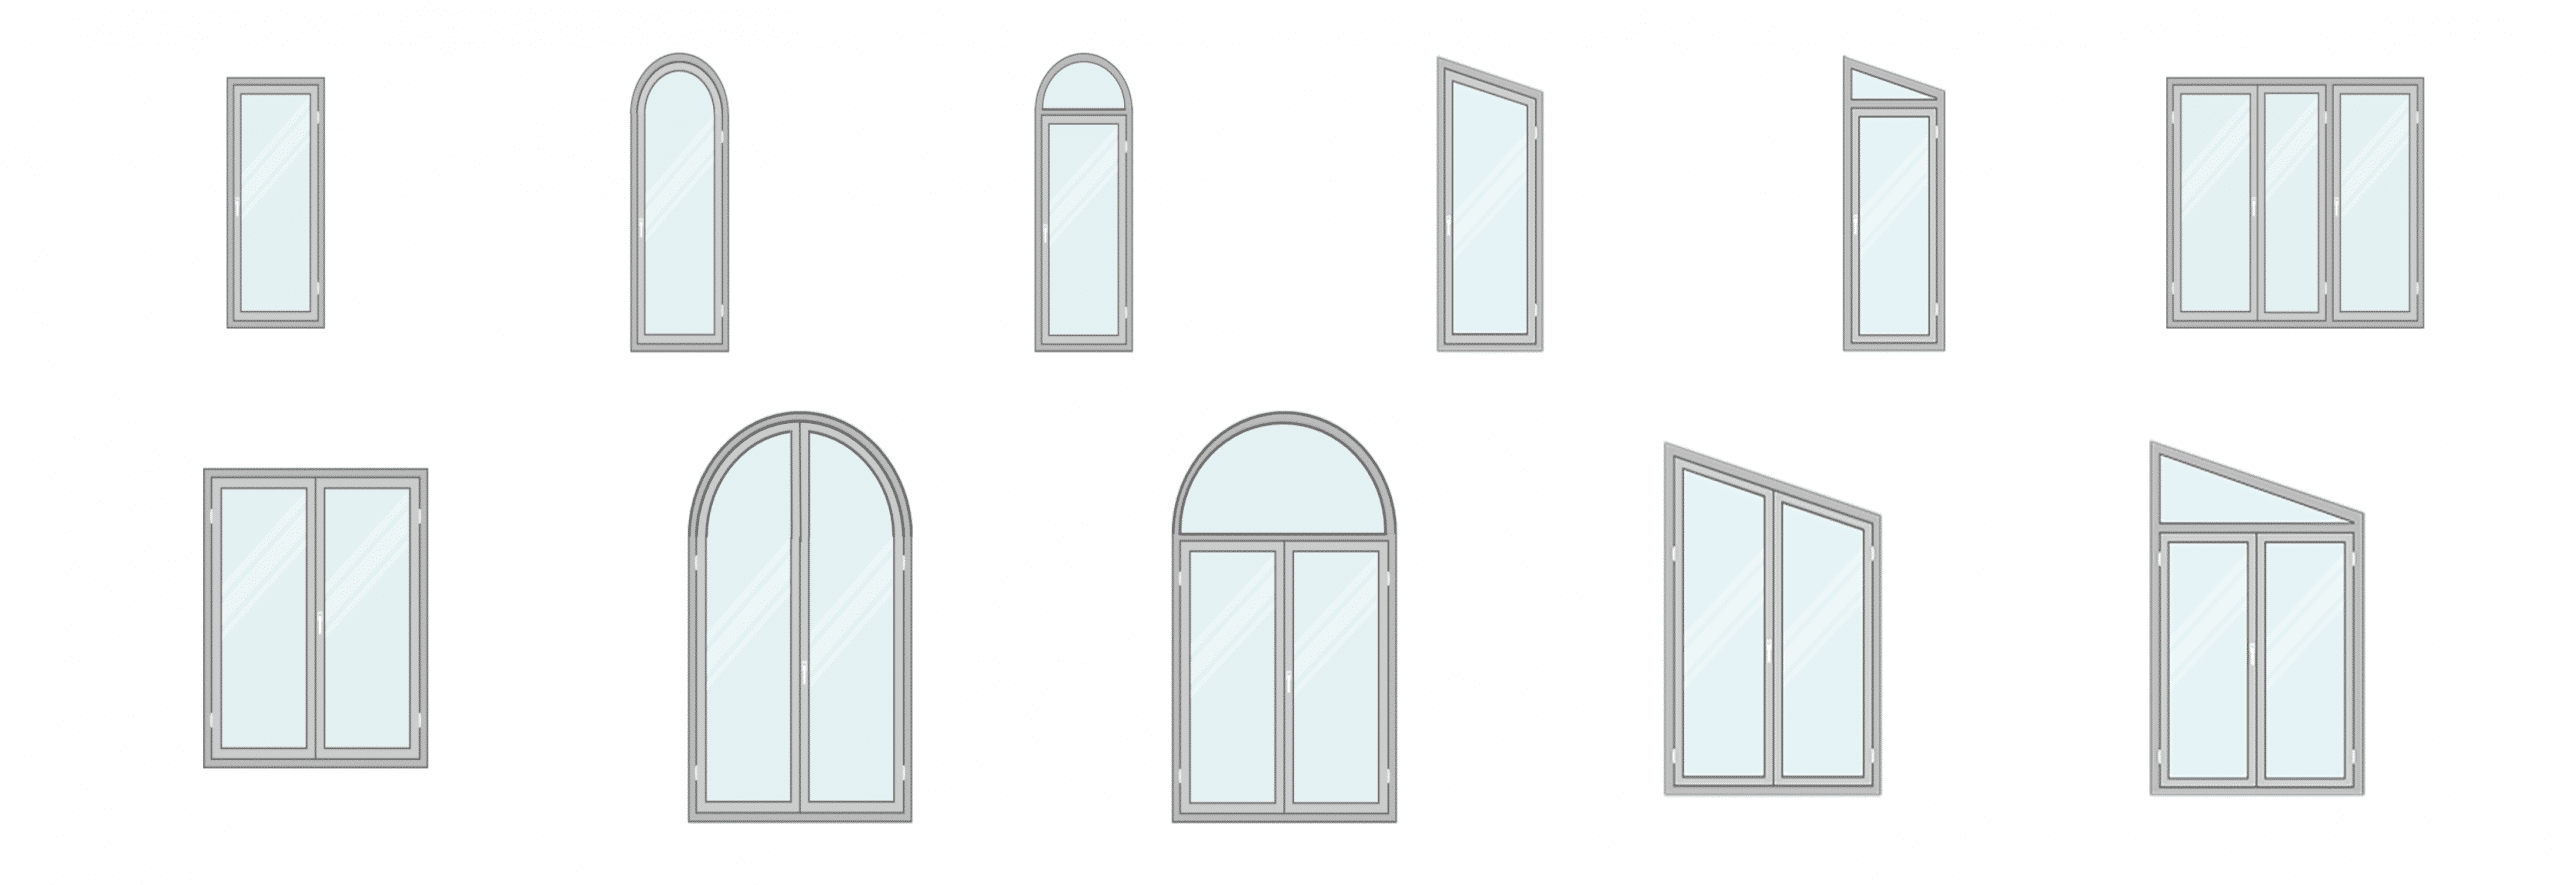 7 советов по выбору идеальной двери для вашего дома — окна и многое другое